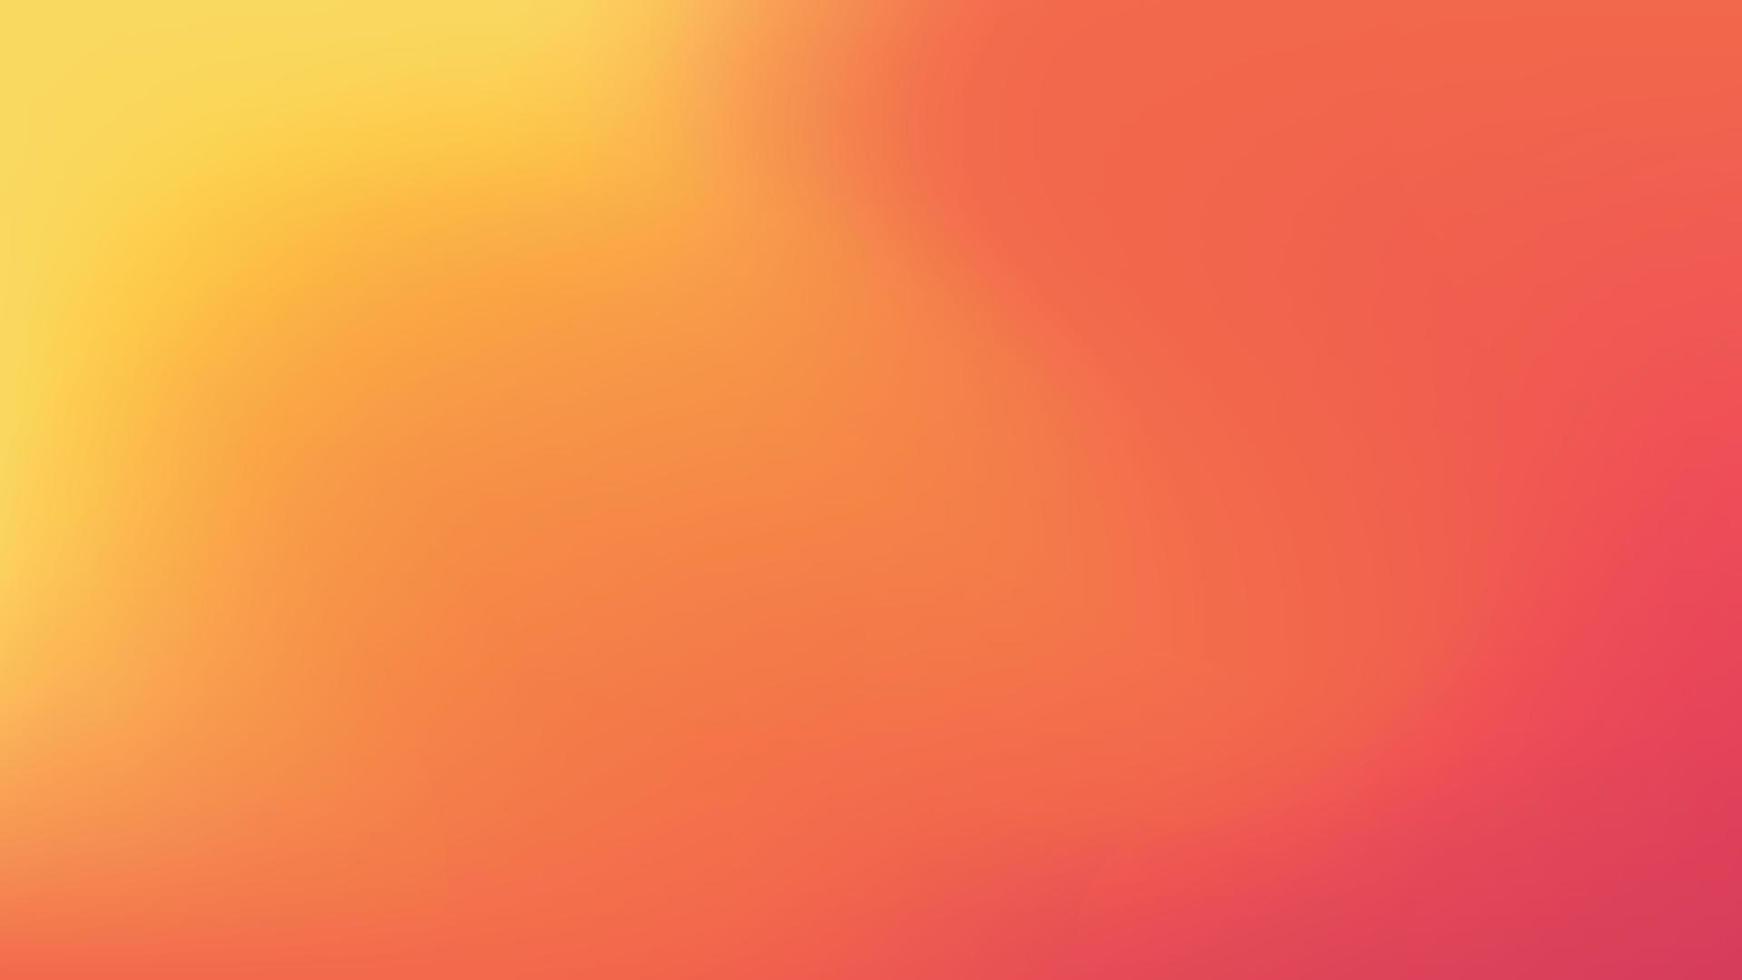 abstrakter Hintergrund mit Farbverlauf. glatt weich und warm hell zart flüssig rot, gelb, orange farbverlauf für app, webdesign, webseiten, banner, grußkarten. Vektor-Illustration-Design vektor